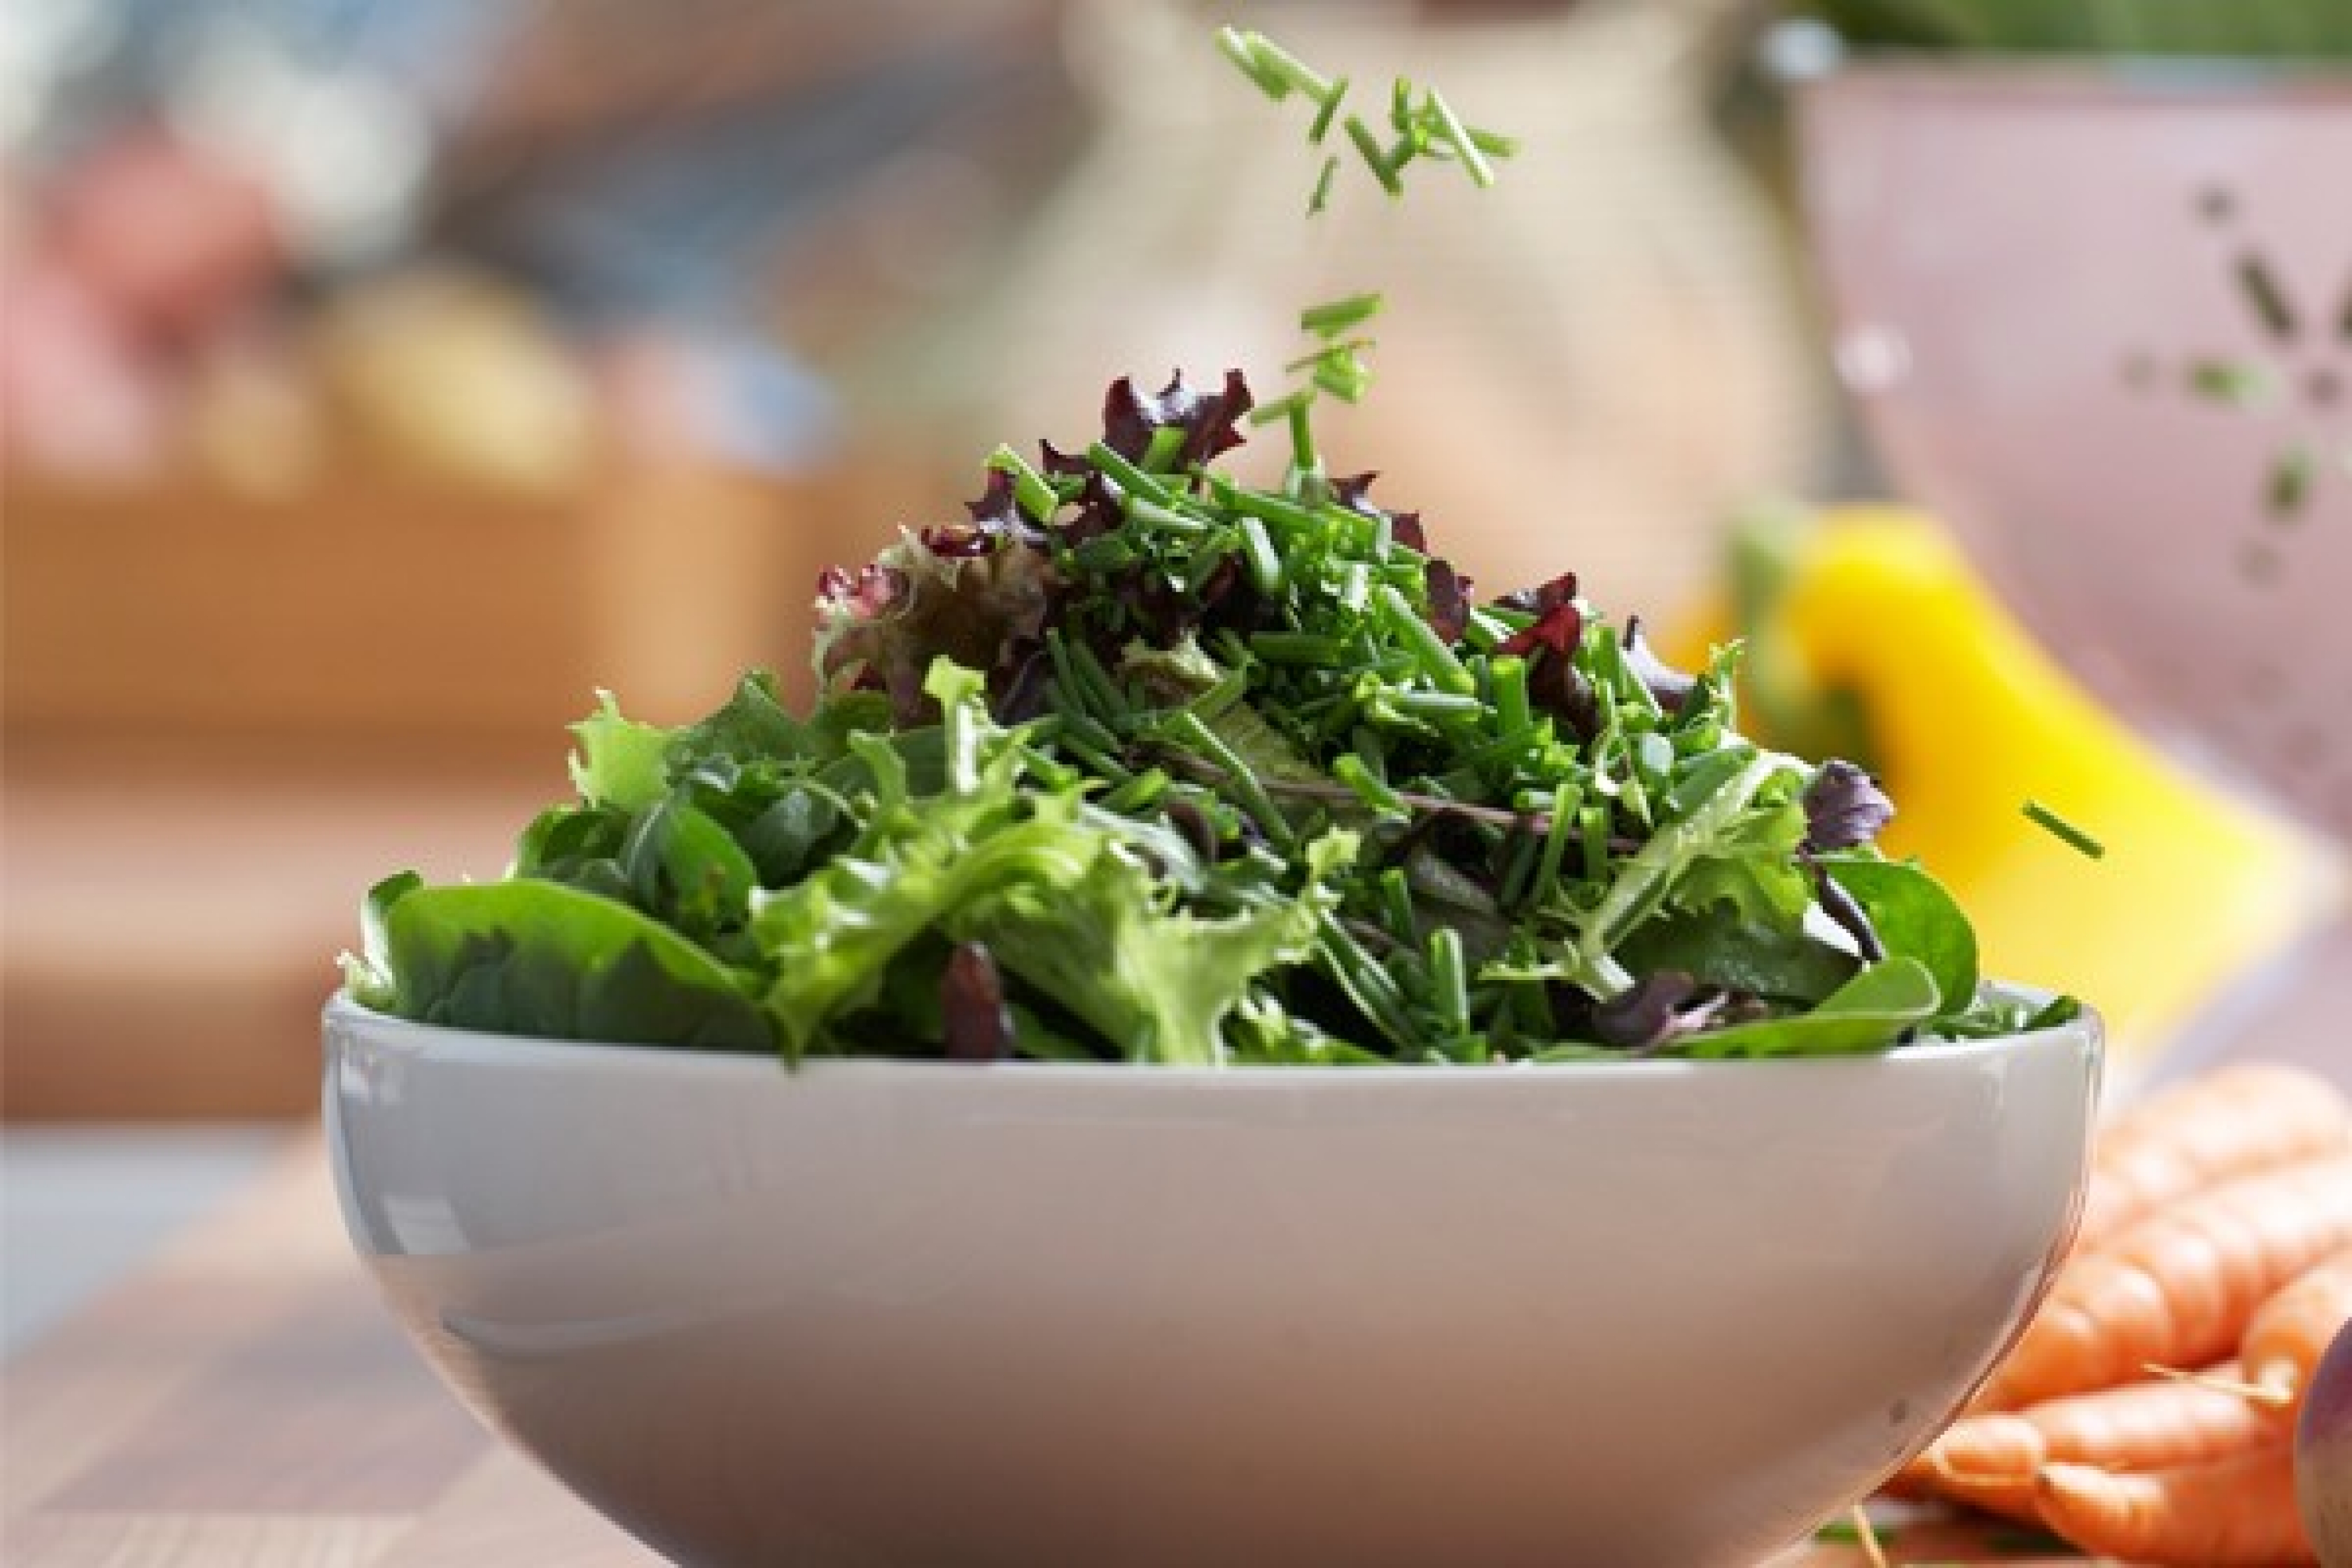 Ein Topf mit Pimpinelle, einer krautige Pflanze mit sehr feinen Blättchen. Ihr Die Pimpinelle passt frisch zu Salat, wie dem abgebildeten gemischten grünen Salat.